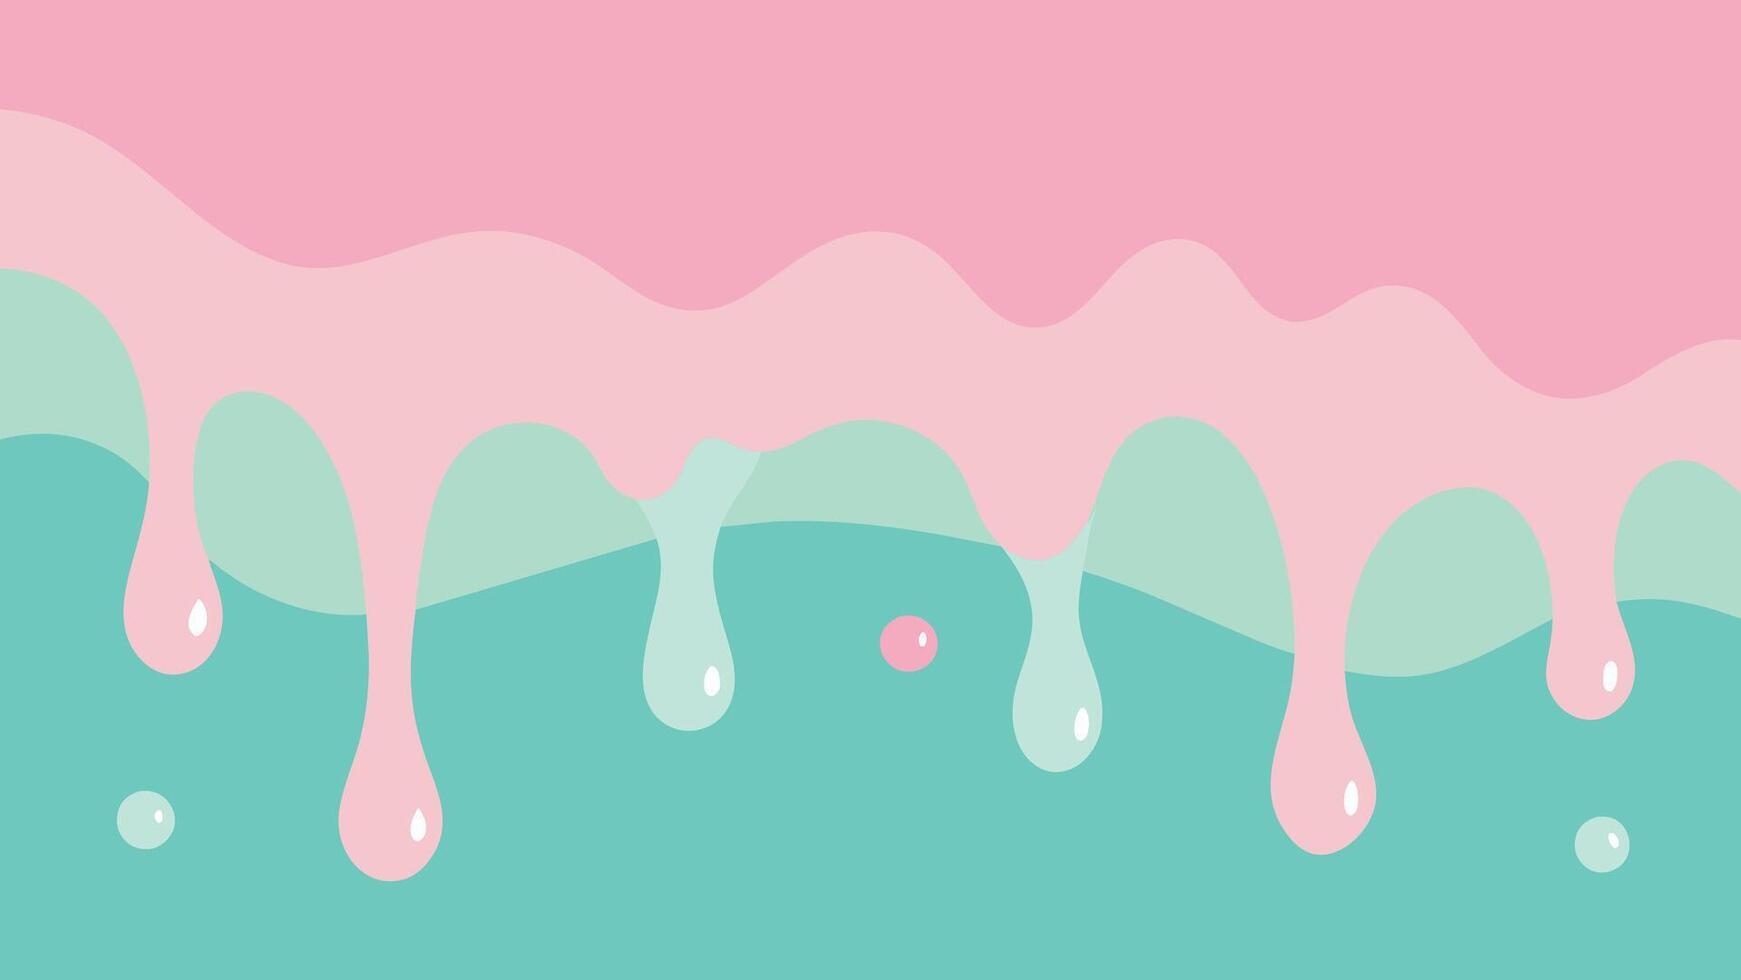 abstrakt bakgrund med pastell droppande droppar. vektor illustration.